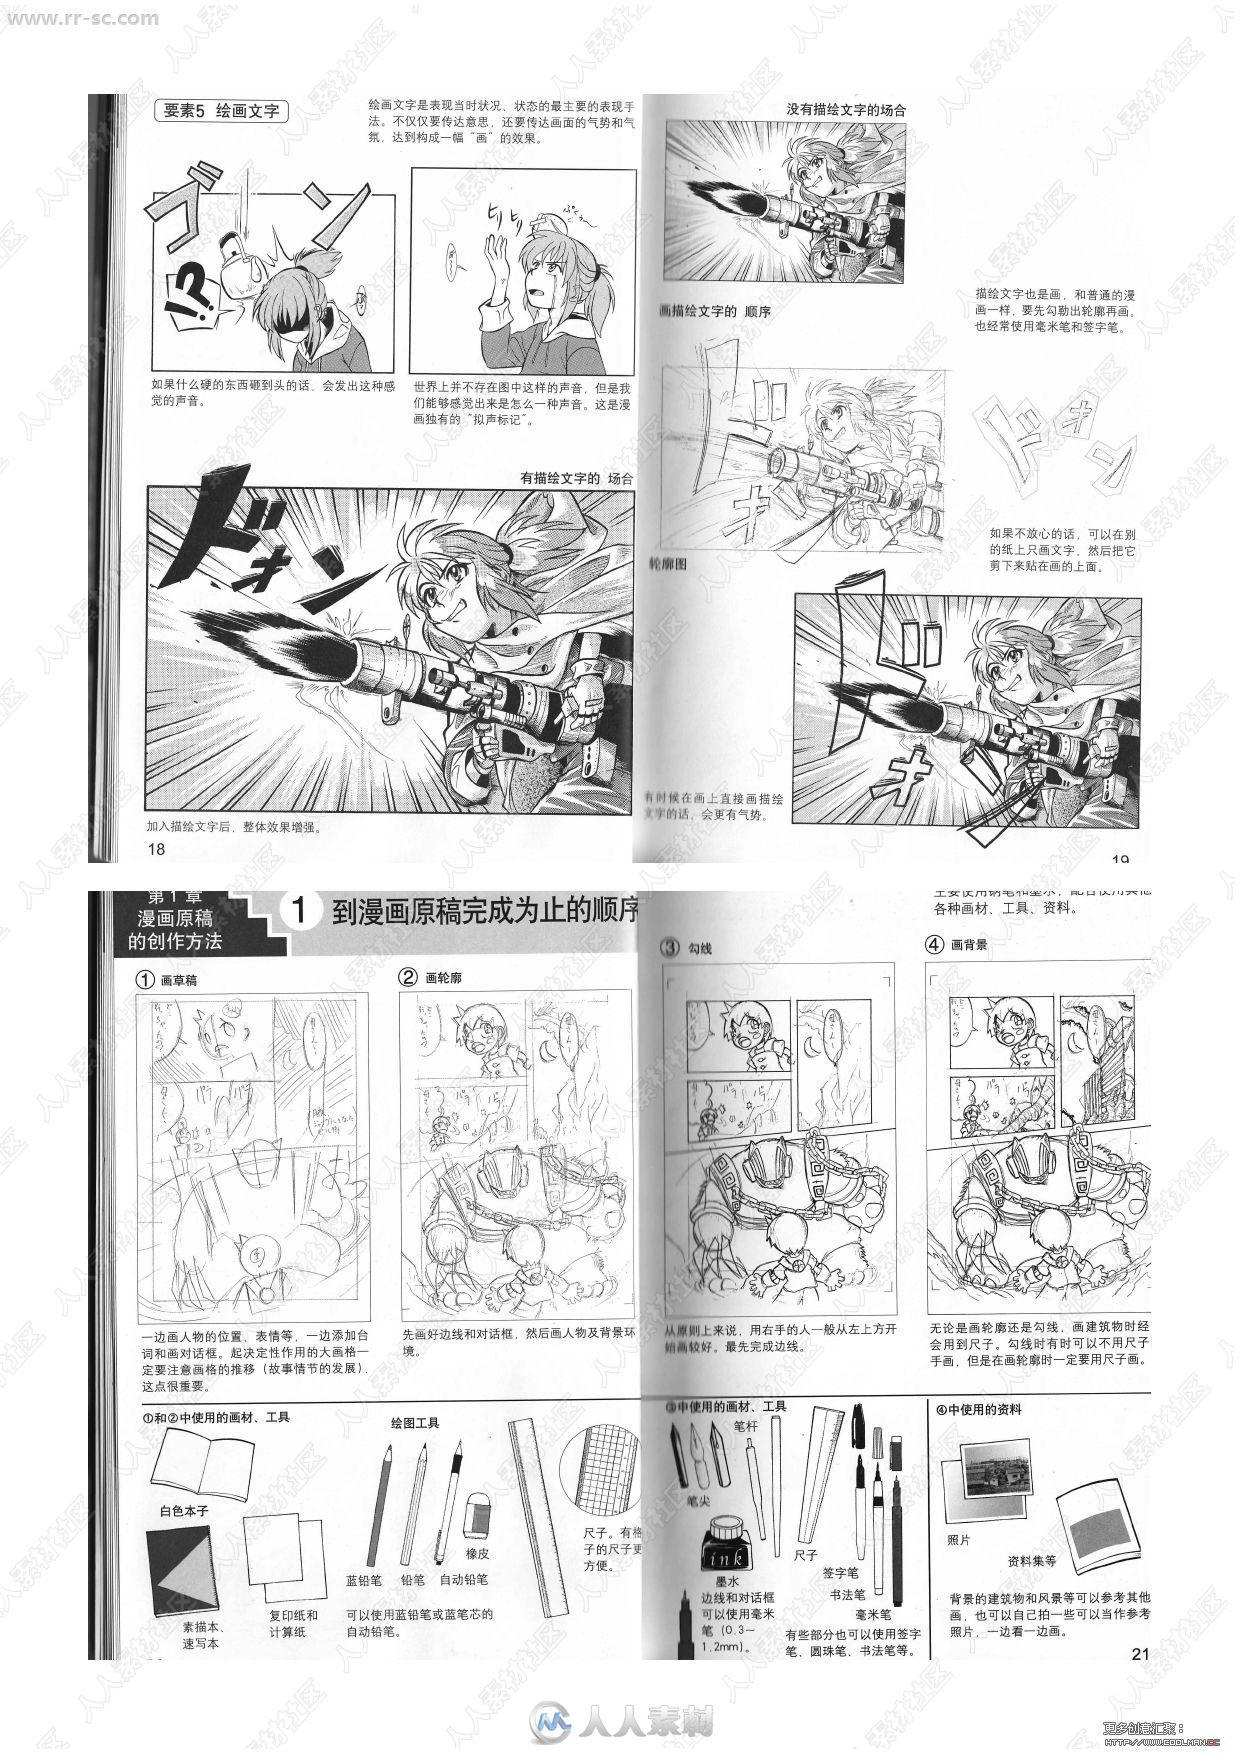 日本漫画技法终极向导人物画材基础篇书籍杂志